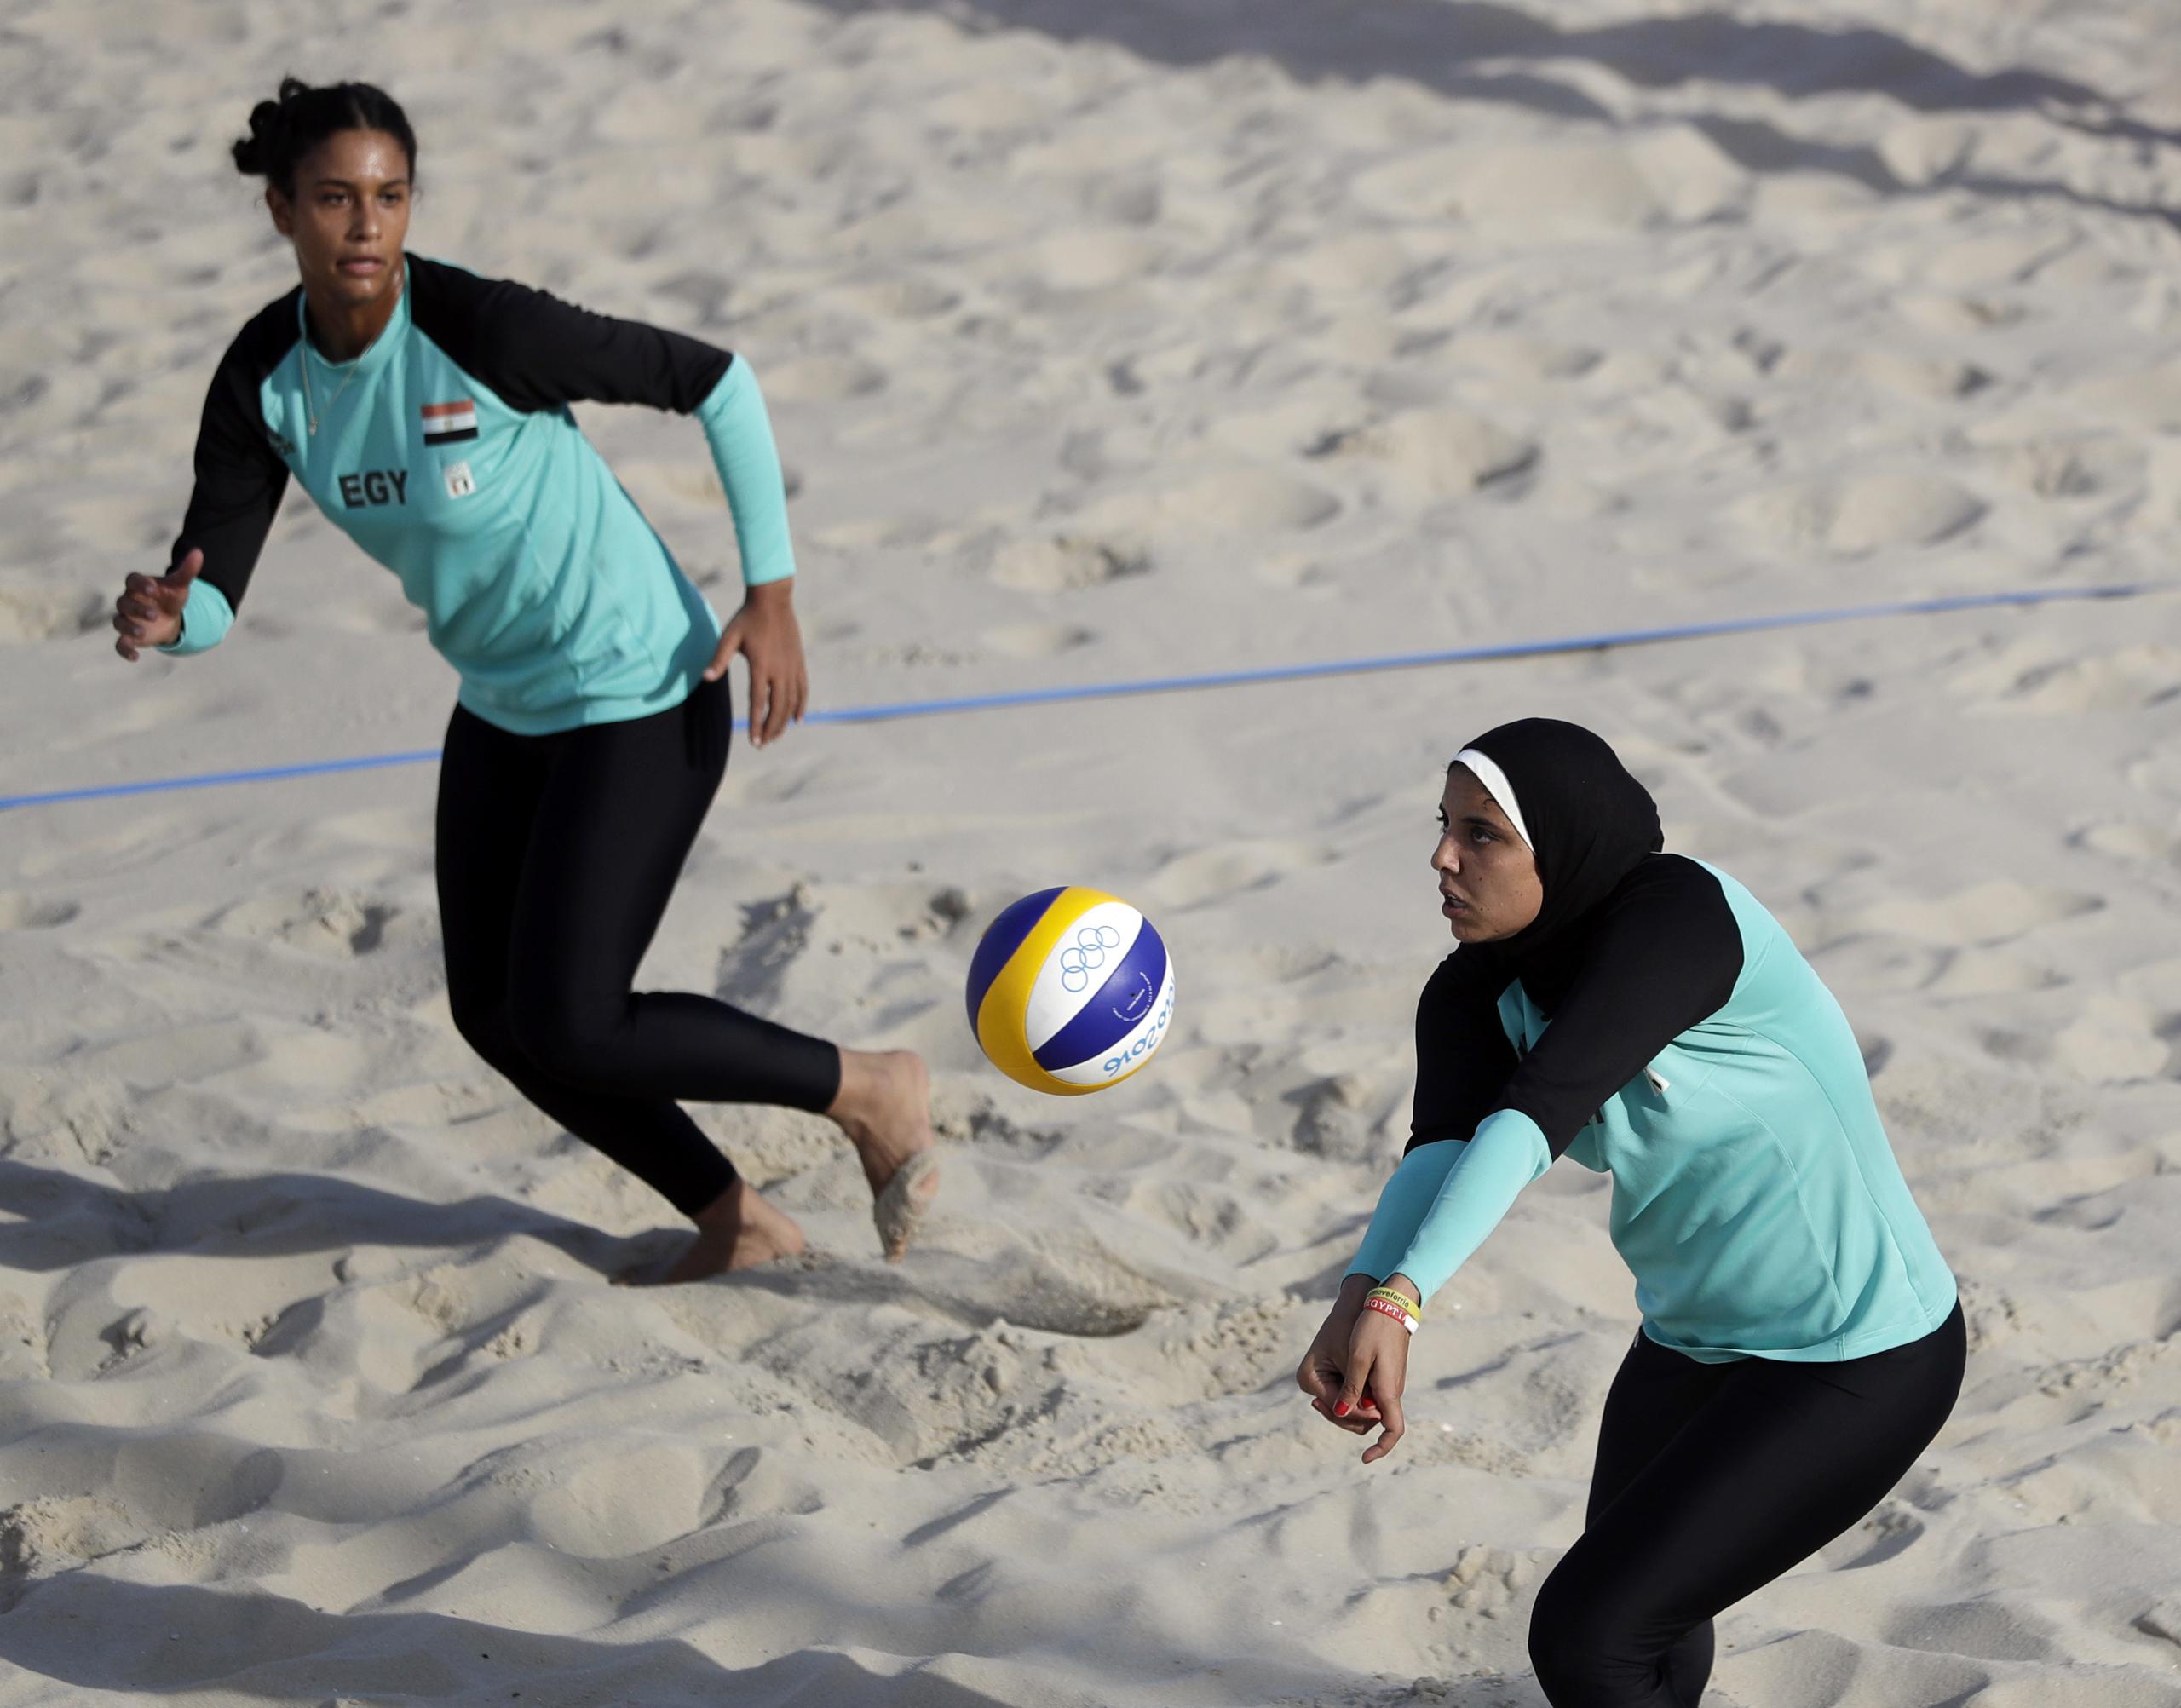 En las Olimpiadas de Río en 2016, la pareja egipcia de Nada Meawad y Doaa Elghobashy utilizó uniformes más conservadores durante su participación, algo que las reglas del voleibol de playa permite en sus reglas.